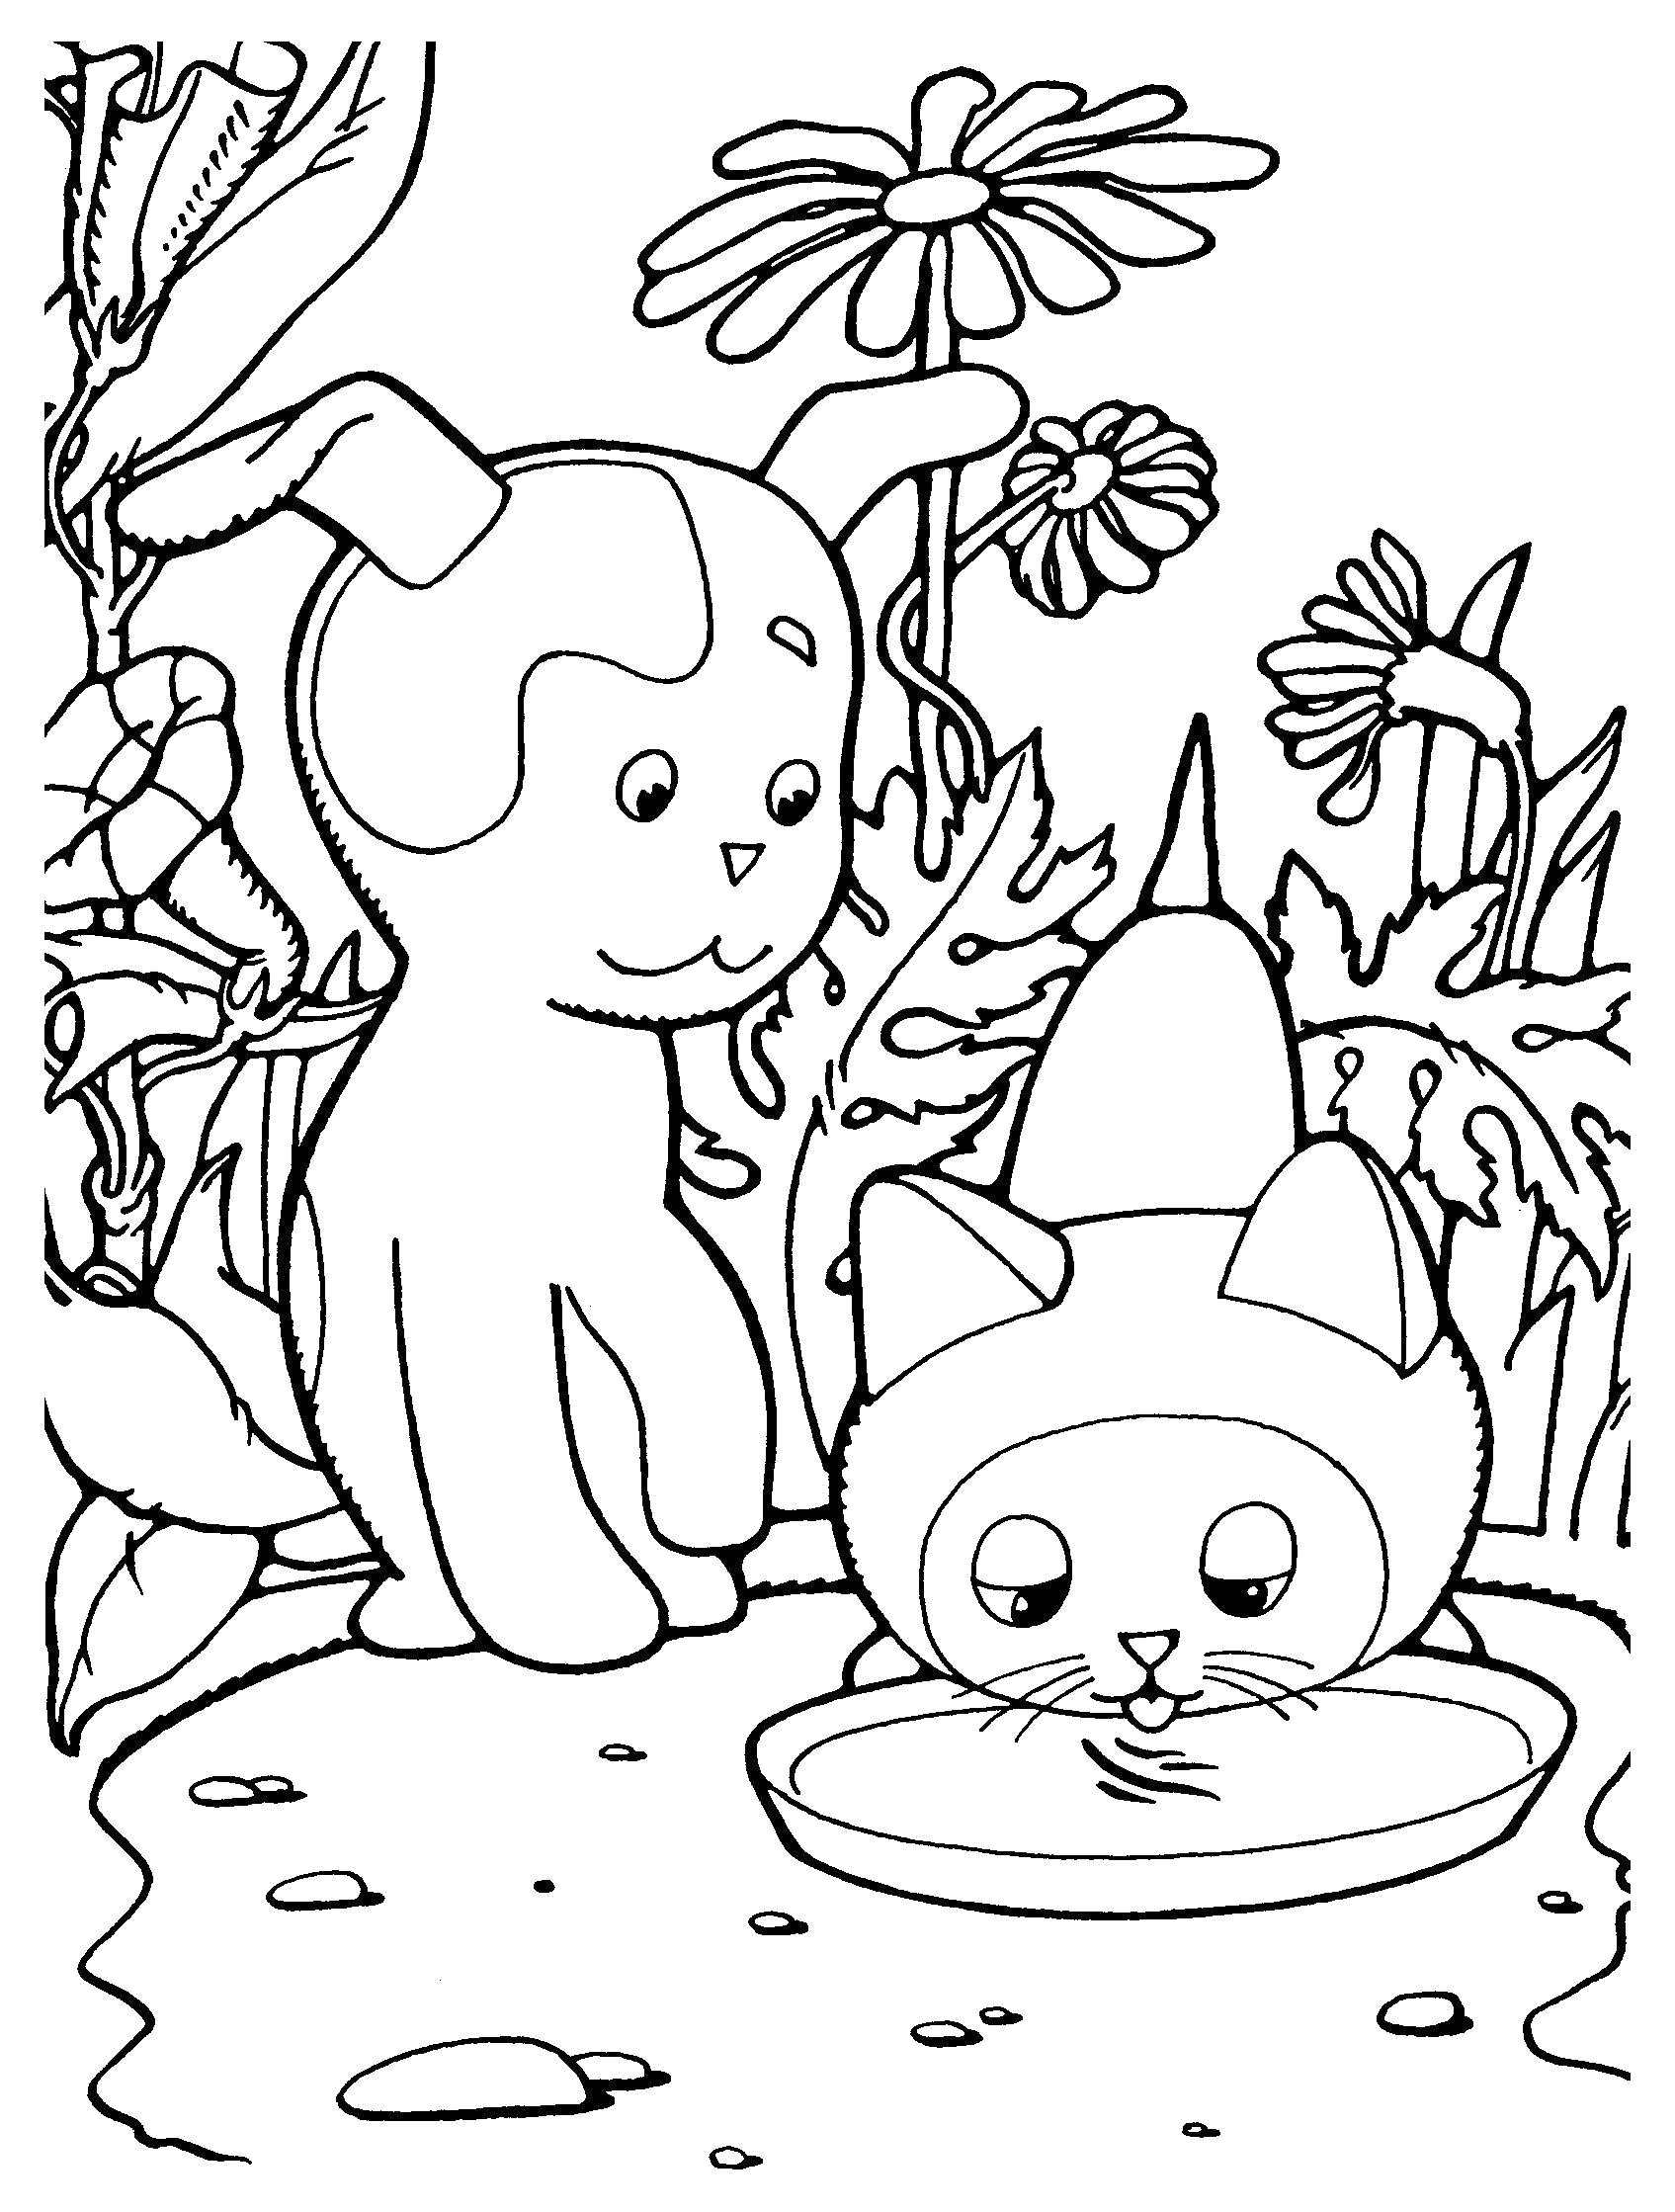 Раскраска детские картинки раскраски с мультфильмов и детские, Котенок Гав пьет из миски, собака шарик. 